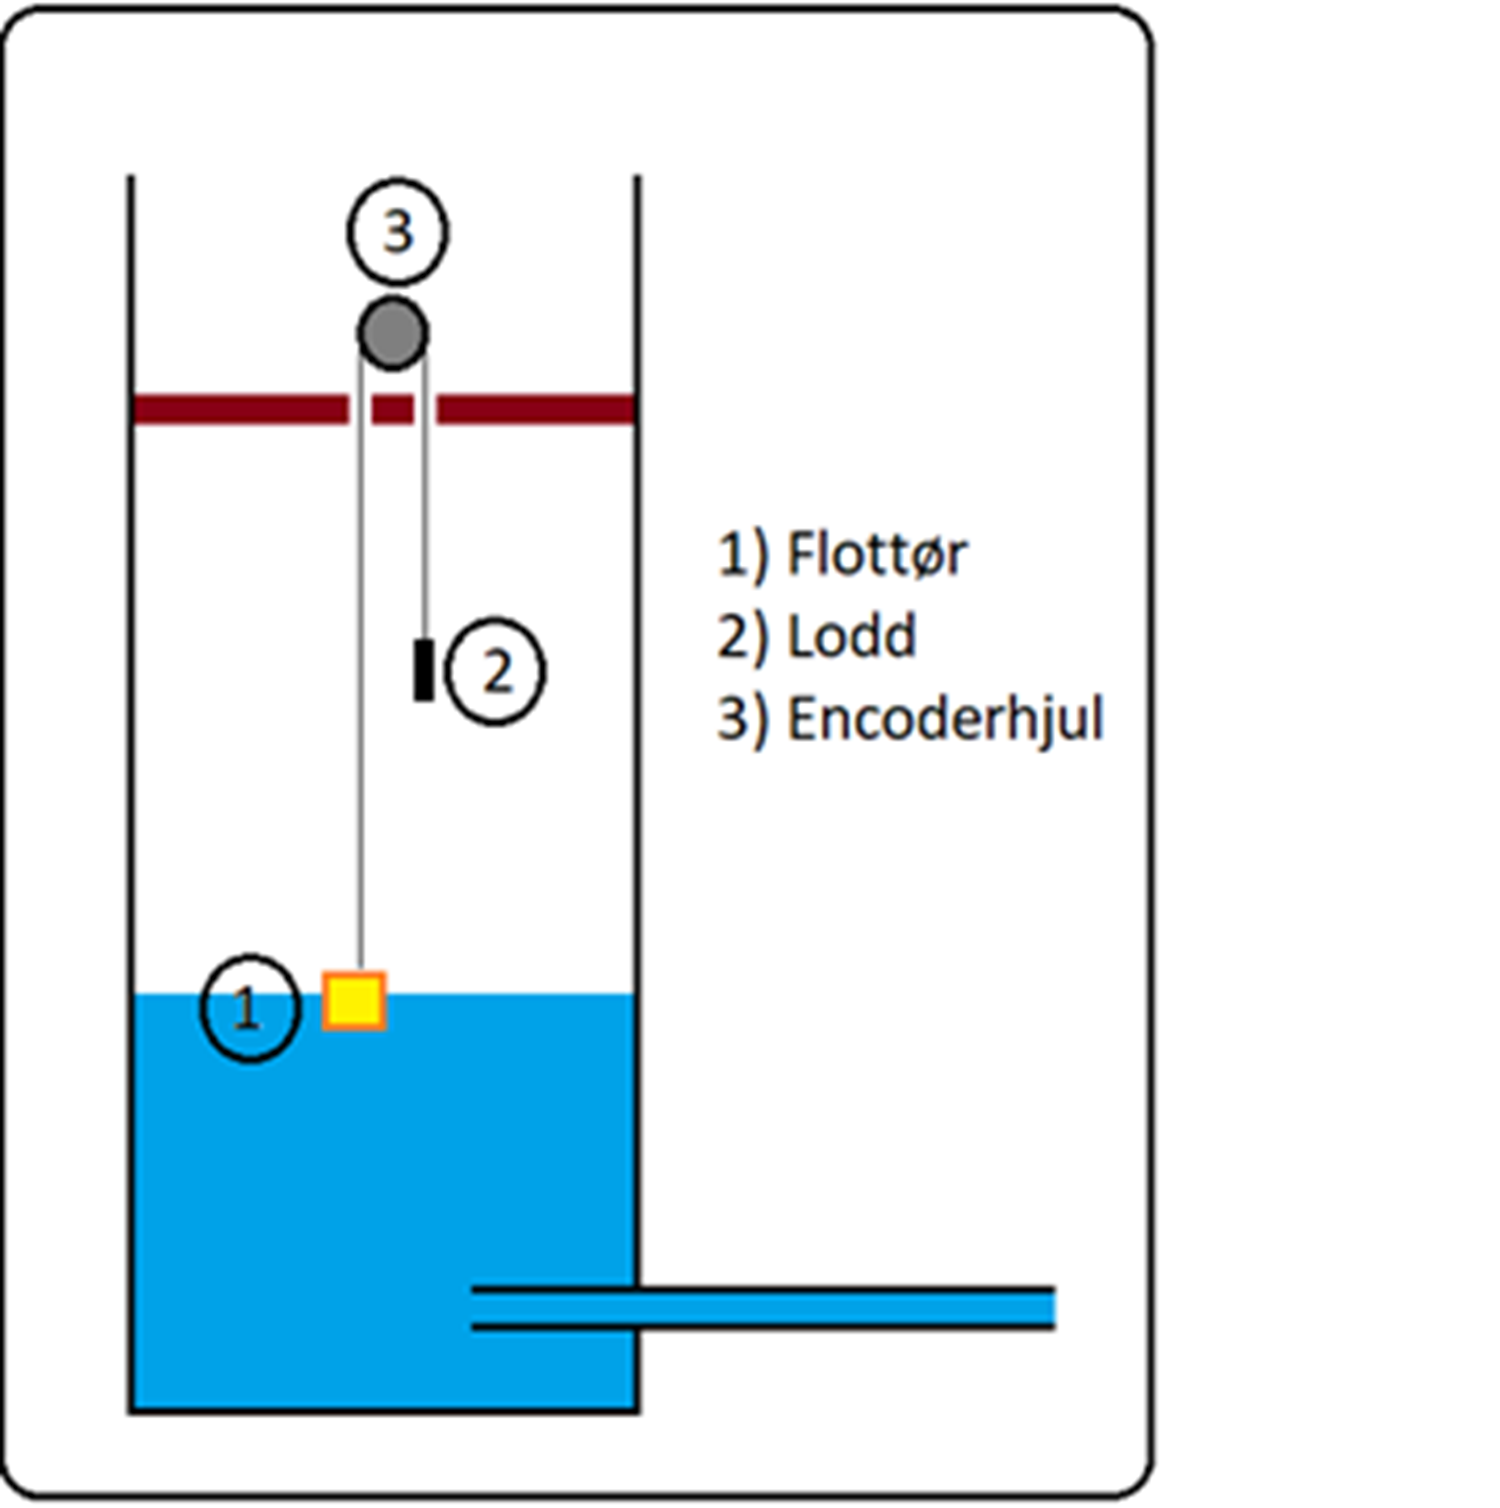 Figur 4.3.a - Skjematisk fremstilling av flottør som måleinstrument for vannstand.